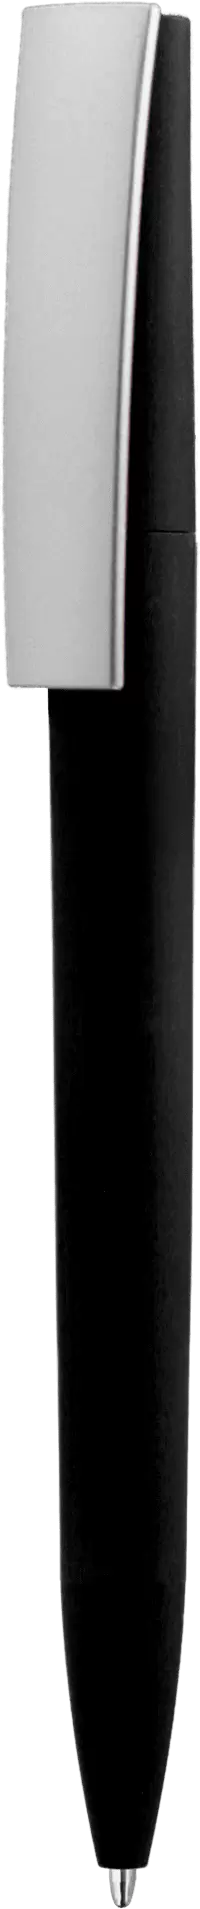 Ручка ZETA SOFT MIX Черная с серебристым 1024-08-06